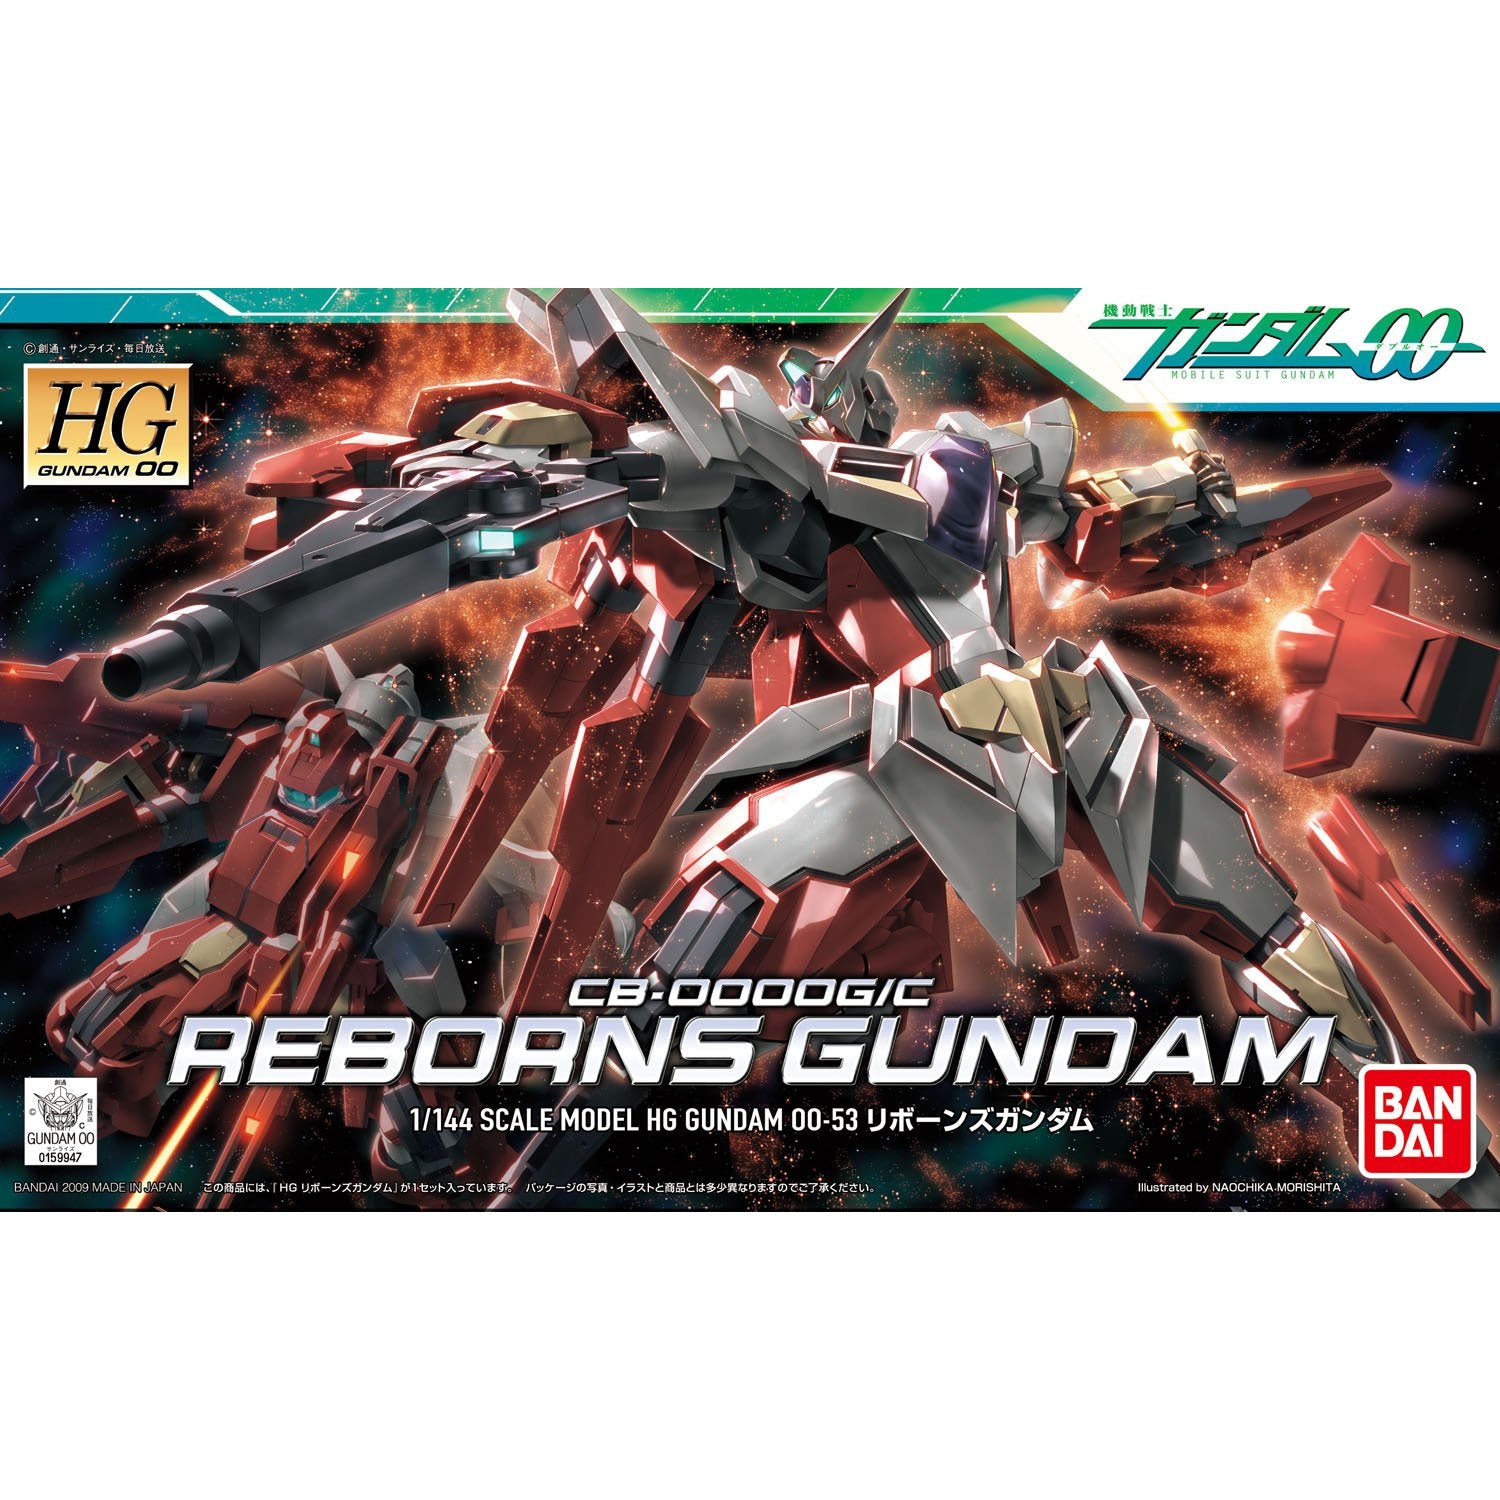 HG 1/144 Gundam 00 #53 CB-0000G/C Reborns Gundam #5057934 by Bandai